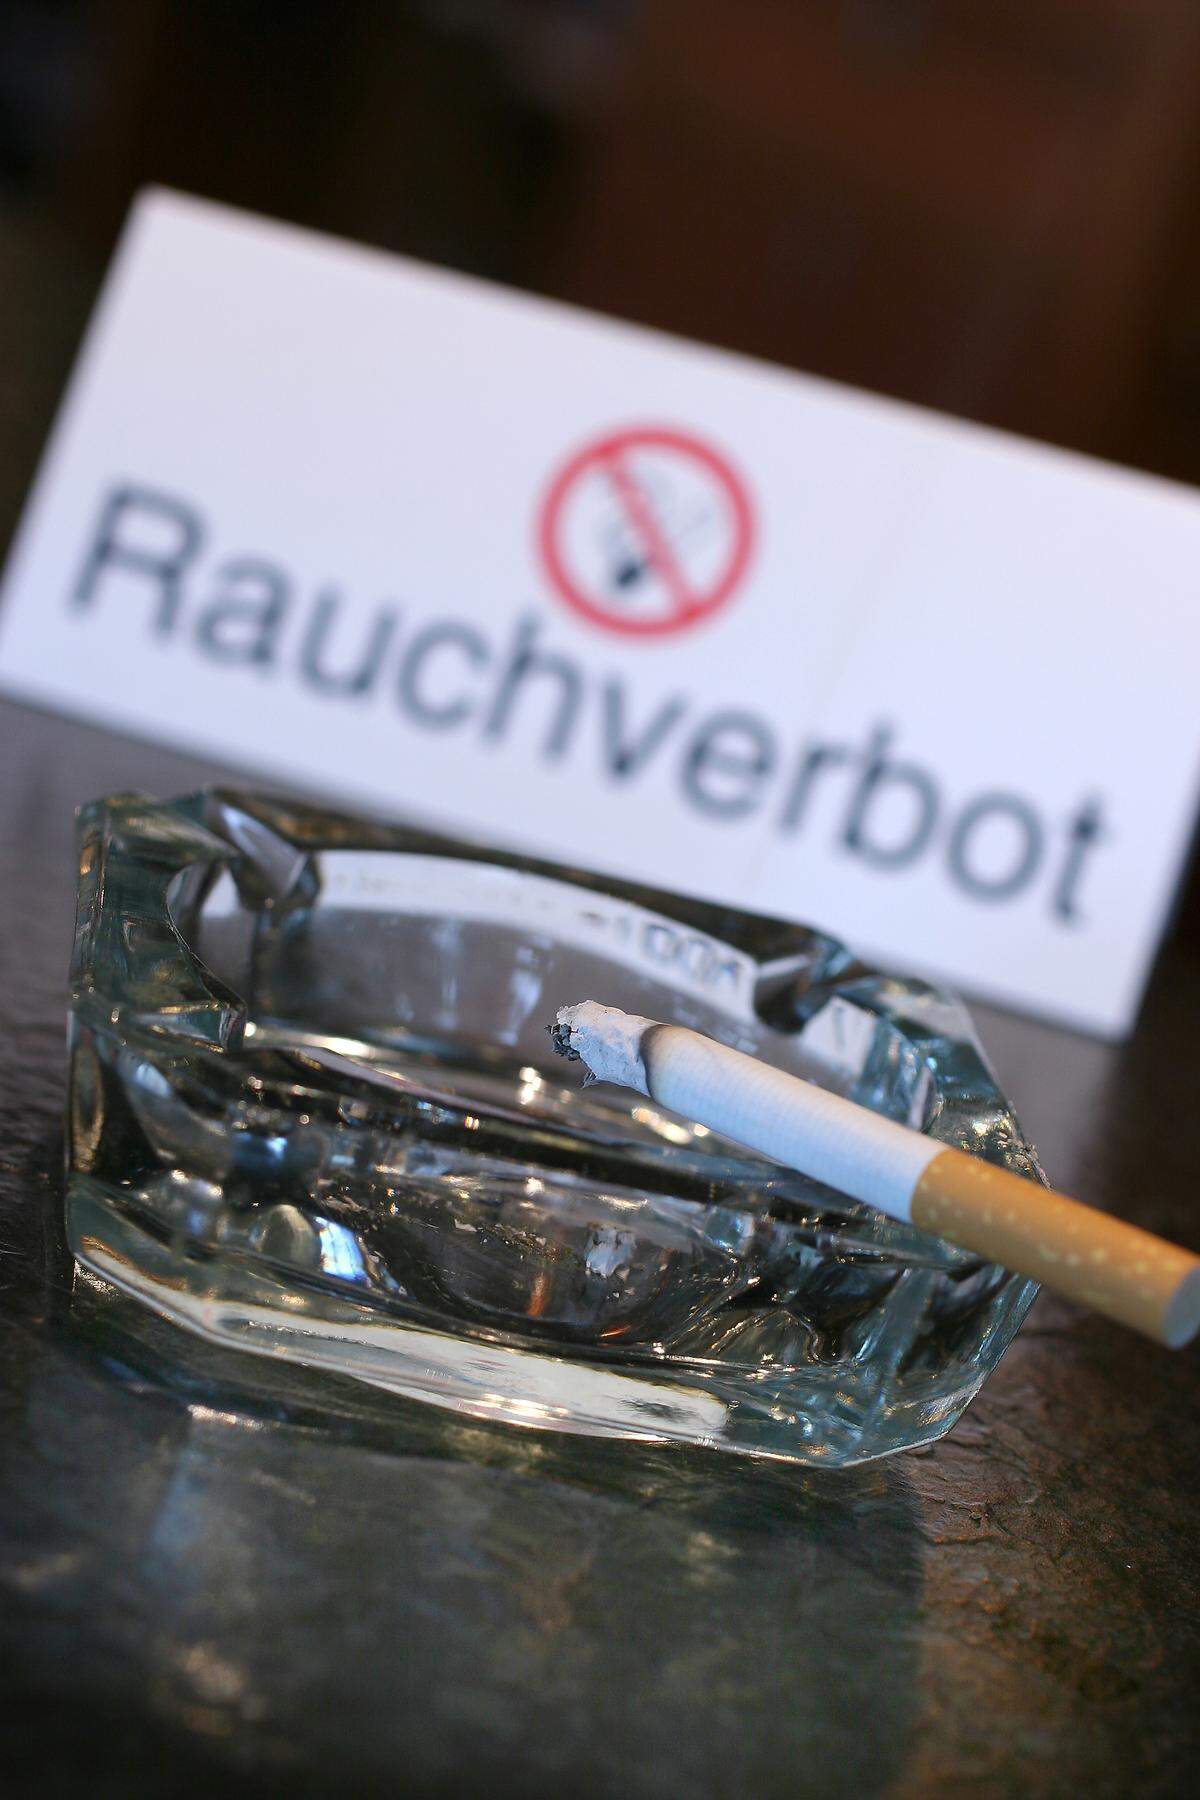 Besonders schlecht schneidet Österreich bei der Tabakgesetzgebung und dem Nichtraucherschutz ab. Hierzulande darf in Lokalen nach wie vor gequalmt werden, der Nichtraucherschutz ist auffallend schwach ausgeprägt. Gemeinsam mit Griechenland landet man in einer Wertung des Verbands der Europäischen Krebs-Ligen am letzten Rang unter 31 Staaten. Gewertet wurden die Kriterien Zigarettenpreise, Werbevorschriften, Tabakgesetzgebung, Warnhinweise und Maßnahmen, welche den Rauchern das Aufhören erleichtern sollen inklusive der für solche Aufgaben vorhandenen Budgets. Am besten ist der Nichtraucherschutz in Großbritannien, Irland, Norwegen und der Türkei ausgebaut.